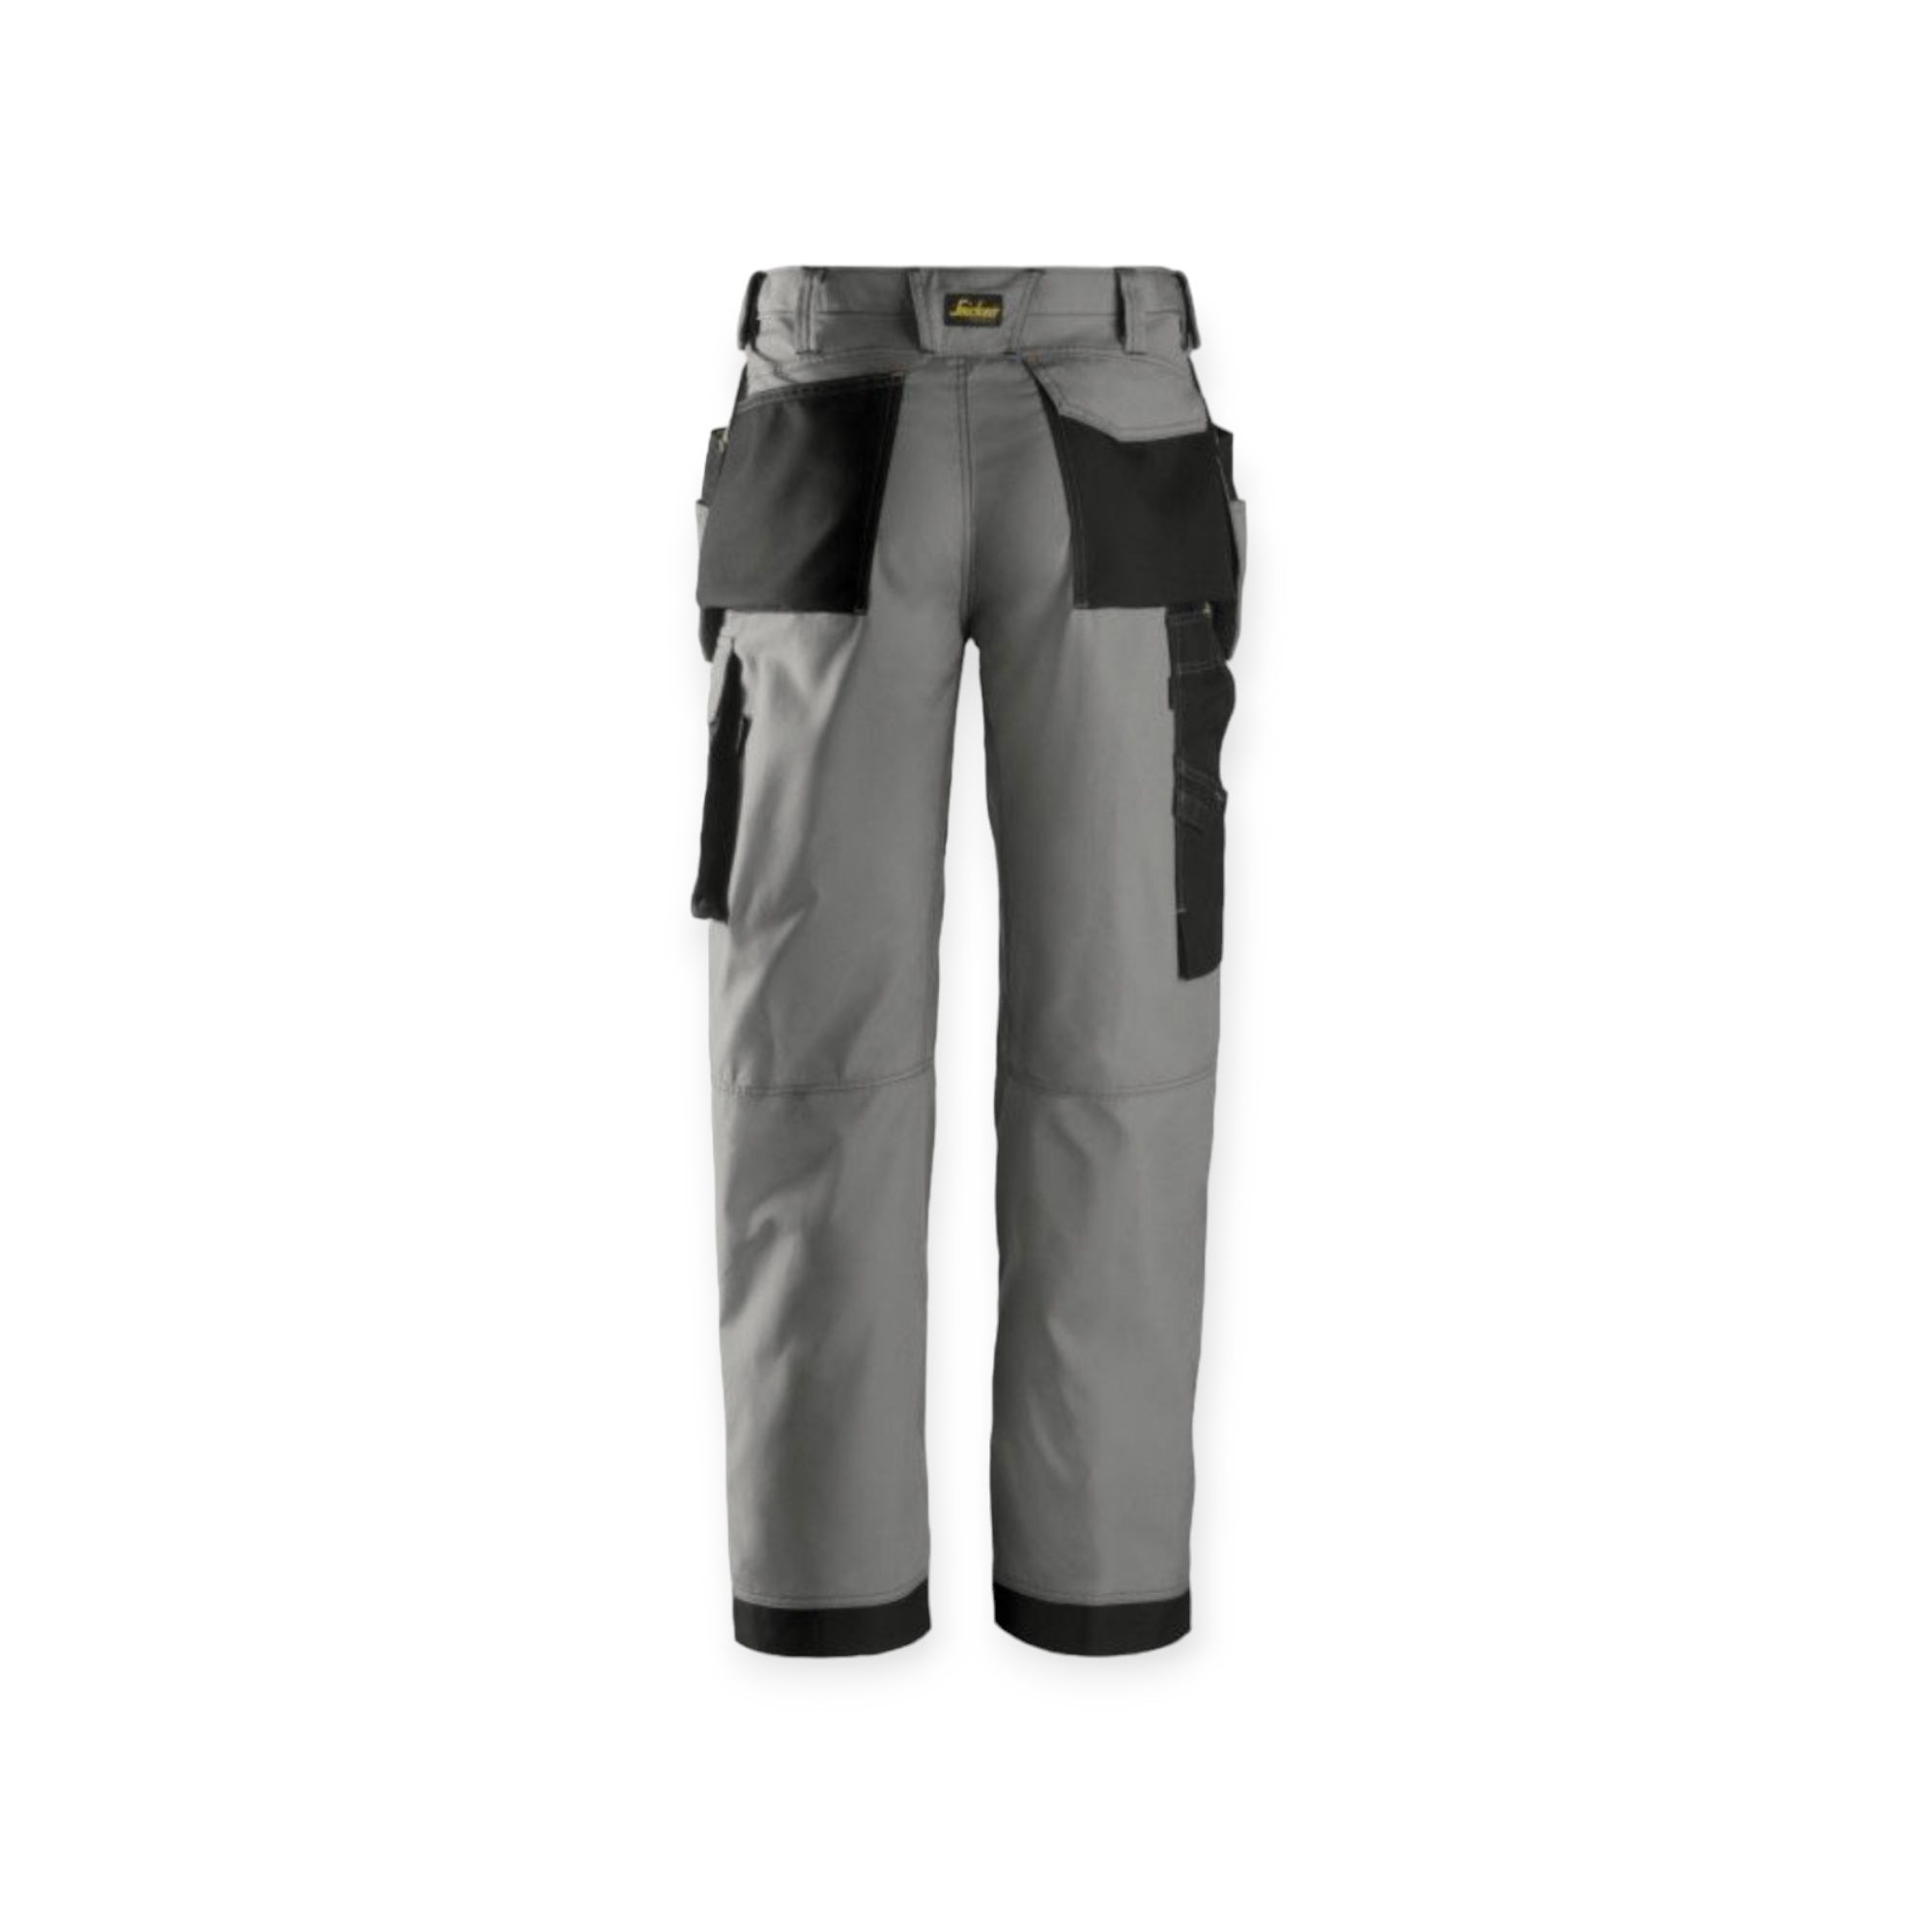 Spodnie Snickers Workwear 3213 Rip-Stop roz.52